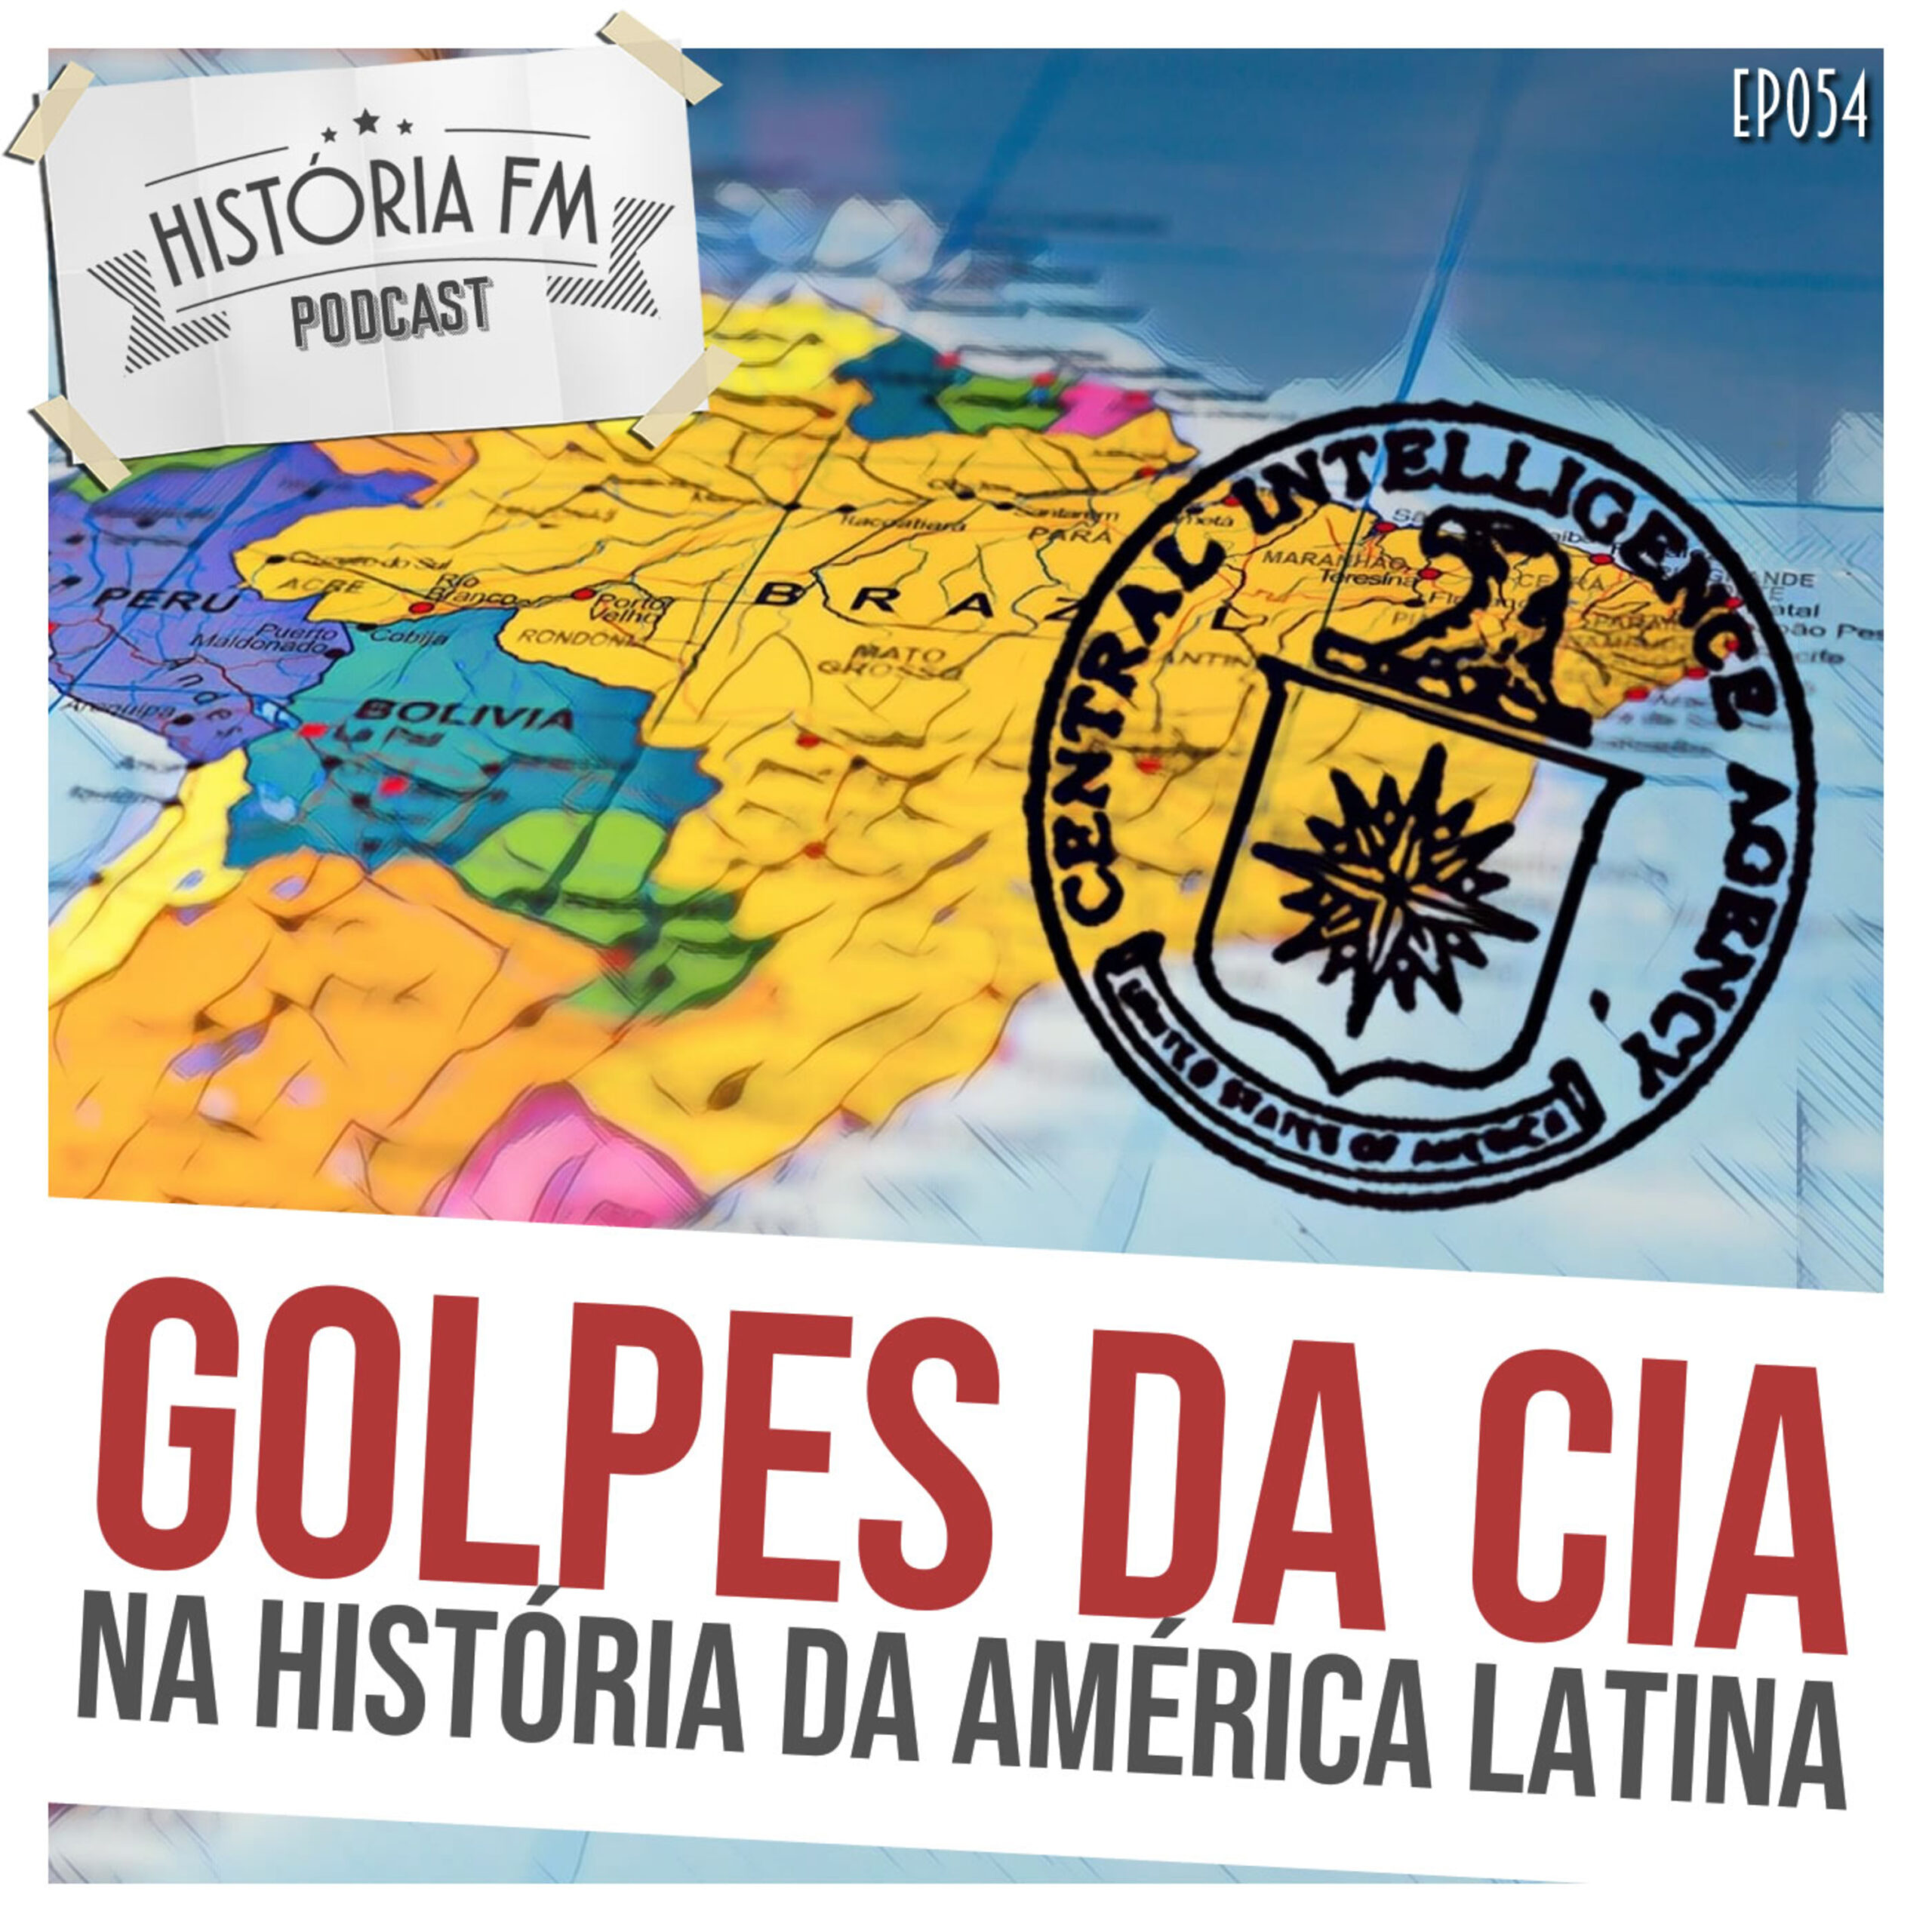 Golpes da CIA na história da América Latina